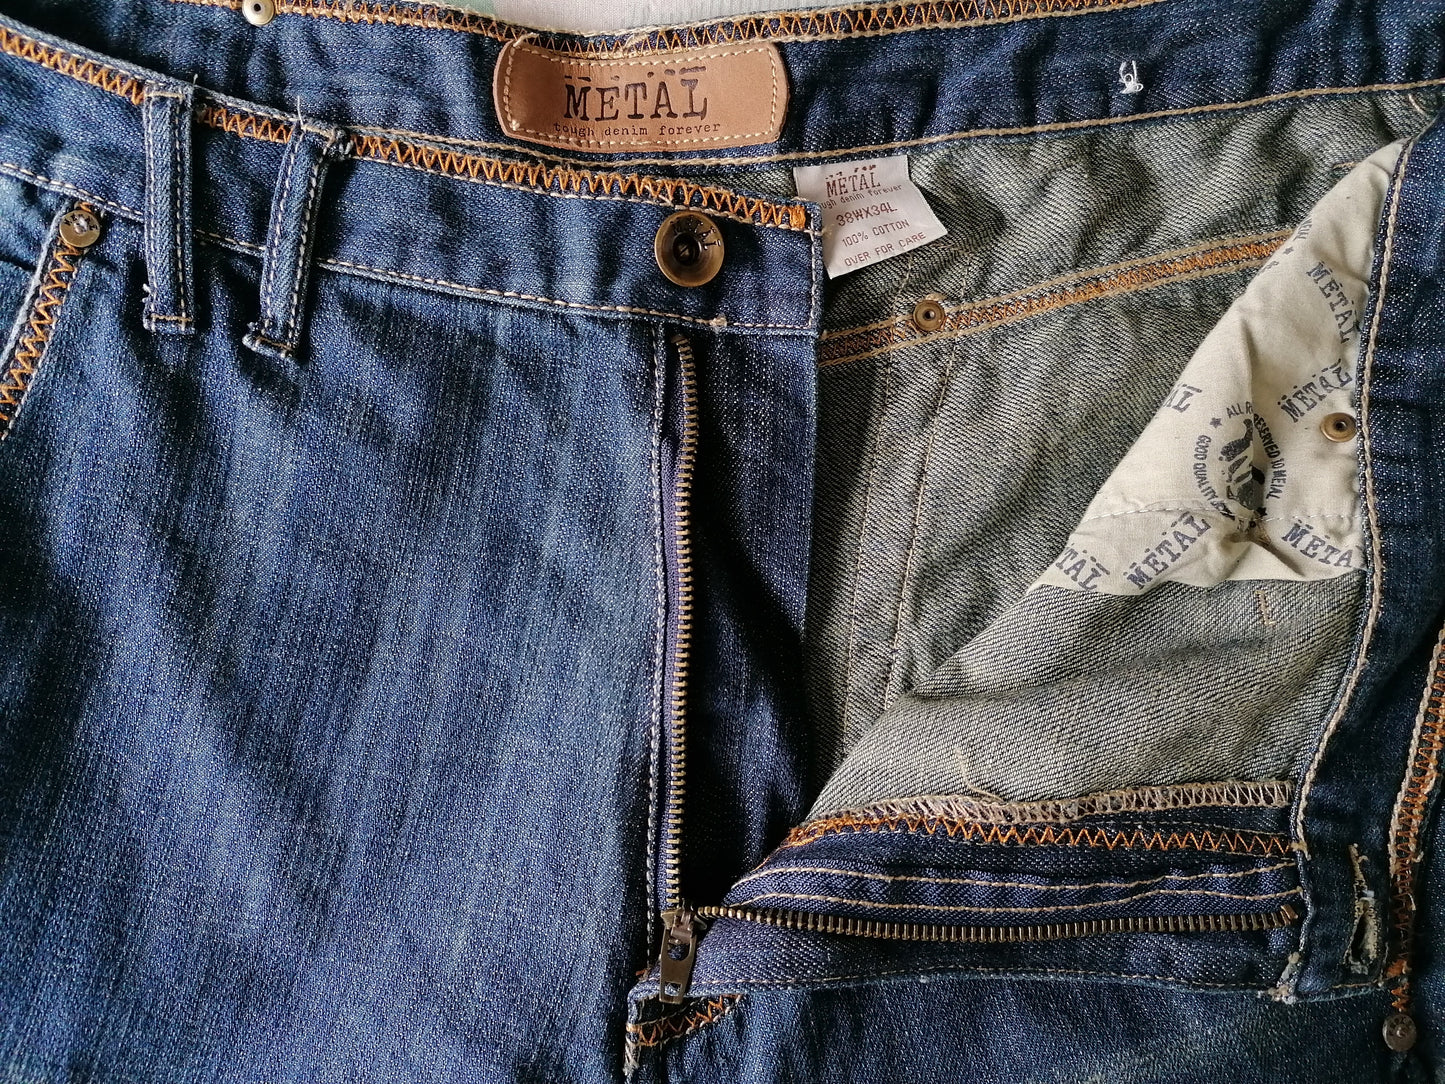 Metal Tough jeans. Blauw met Bruine stiksels. Maat W38 - L34. Wijde broekspijpen.